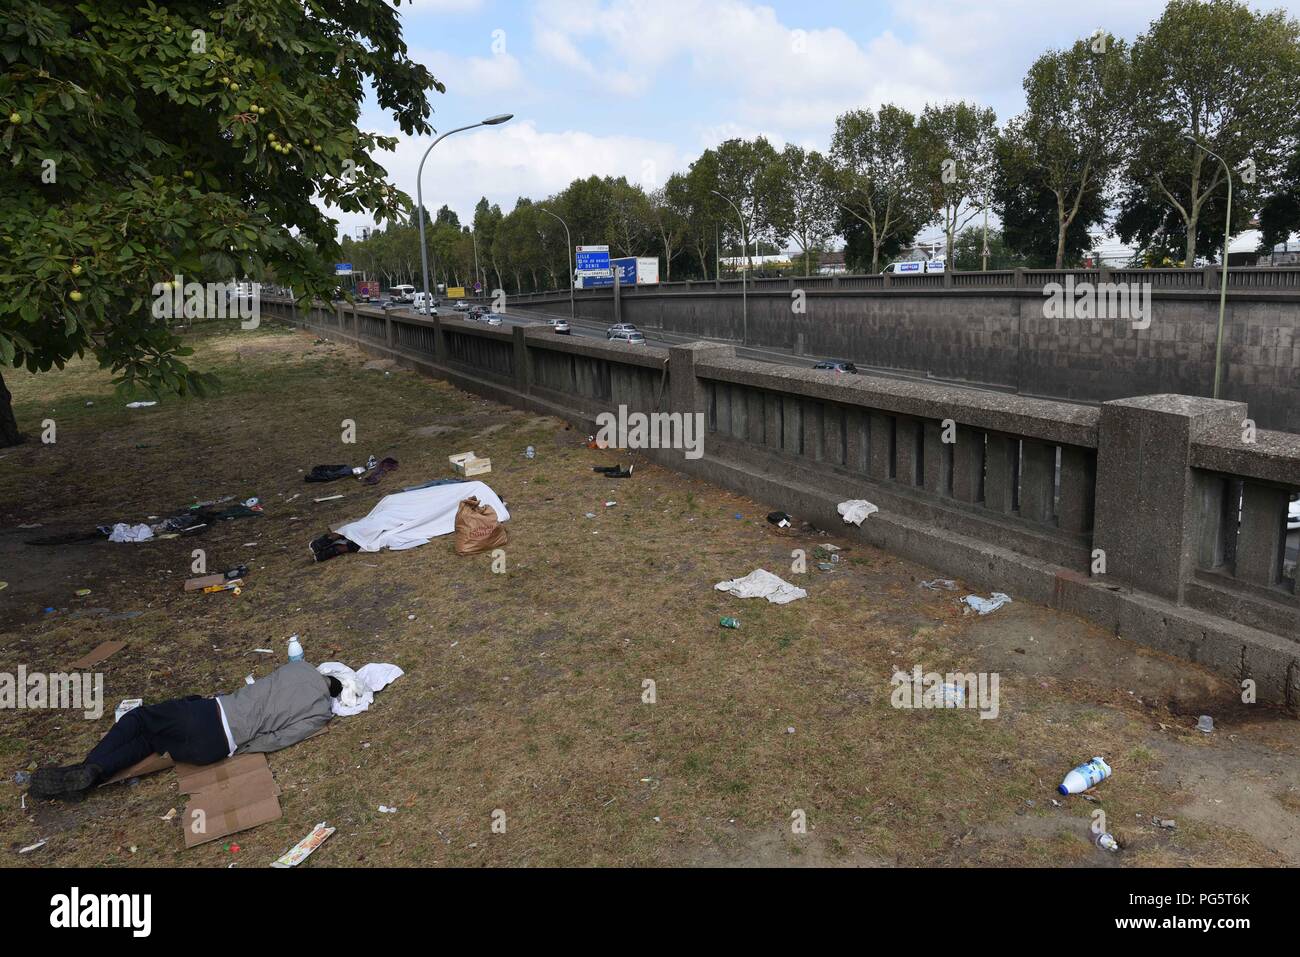 August 14, 2018 - Paris, France: Migrants sleep in a public park near the  peripherique (ring road) between porte de la Chapelle and porte  d'Aubervilliers. Des migrants dorment dans un parc public